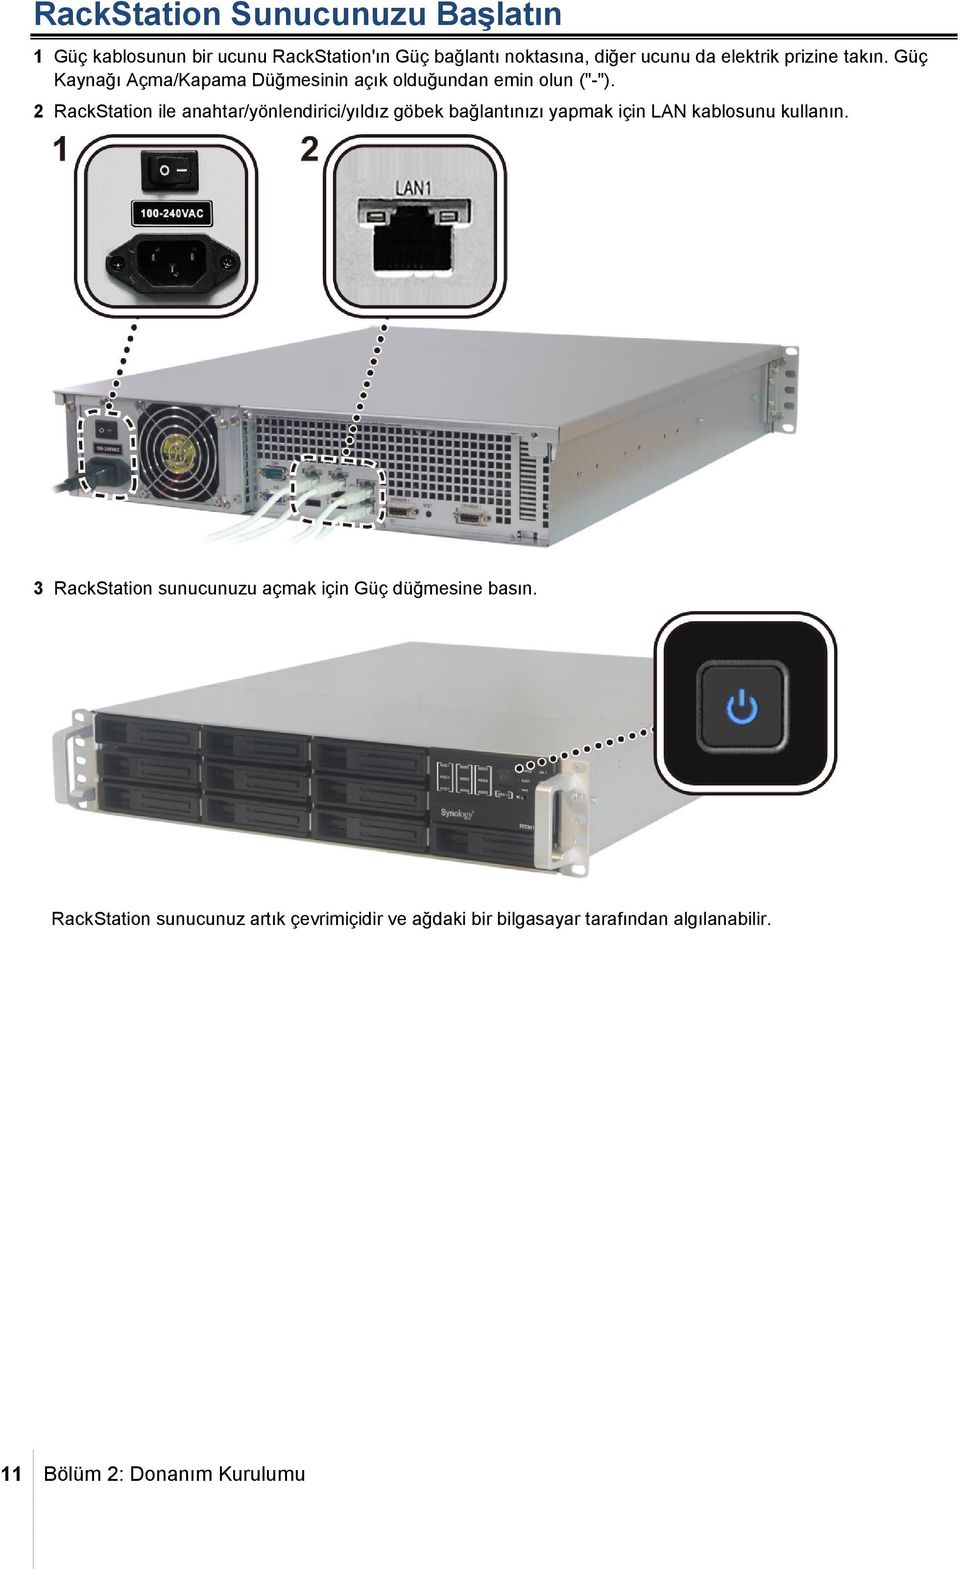 2 RackStation ile anahtar/yönlendirici/yıldız göbek bağlantınızı yapmak için LAN kablosunu kullanın.